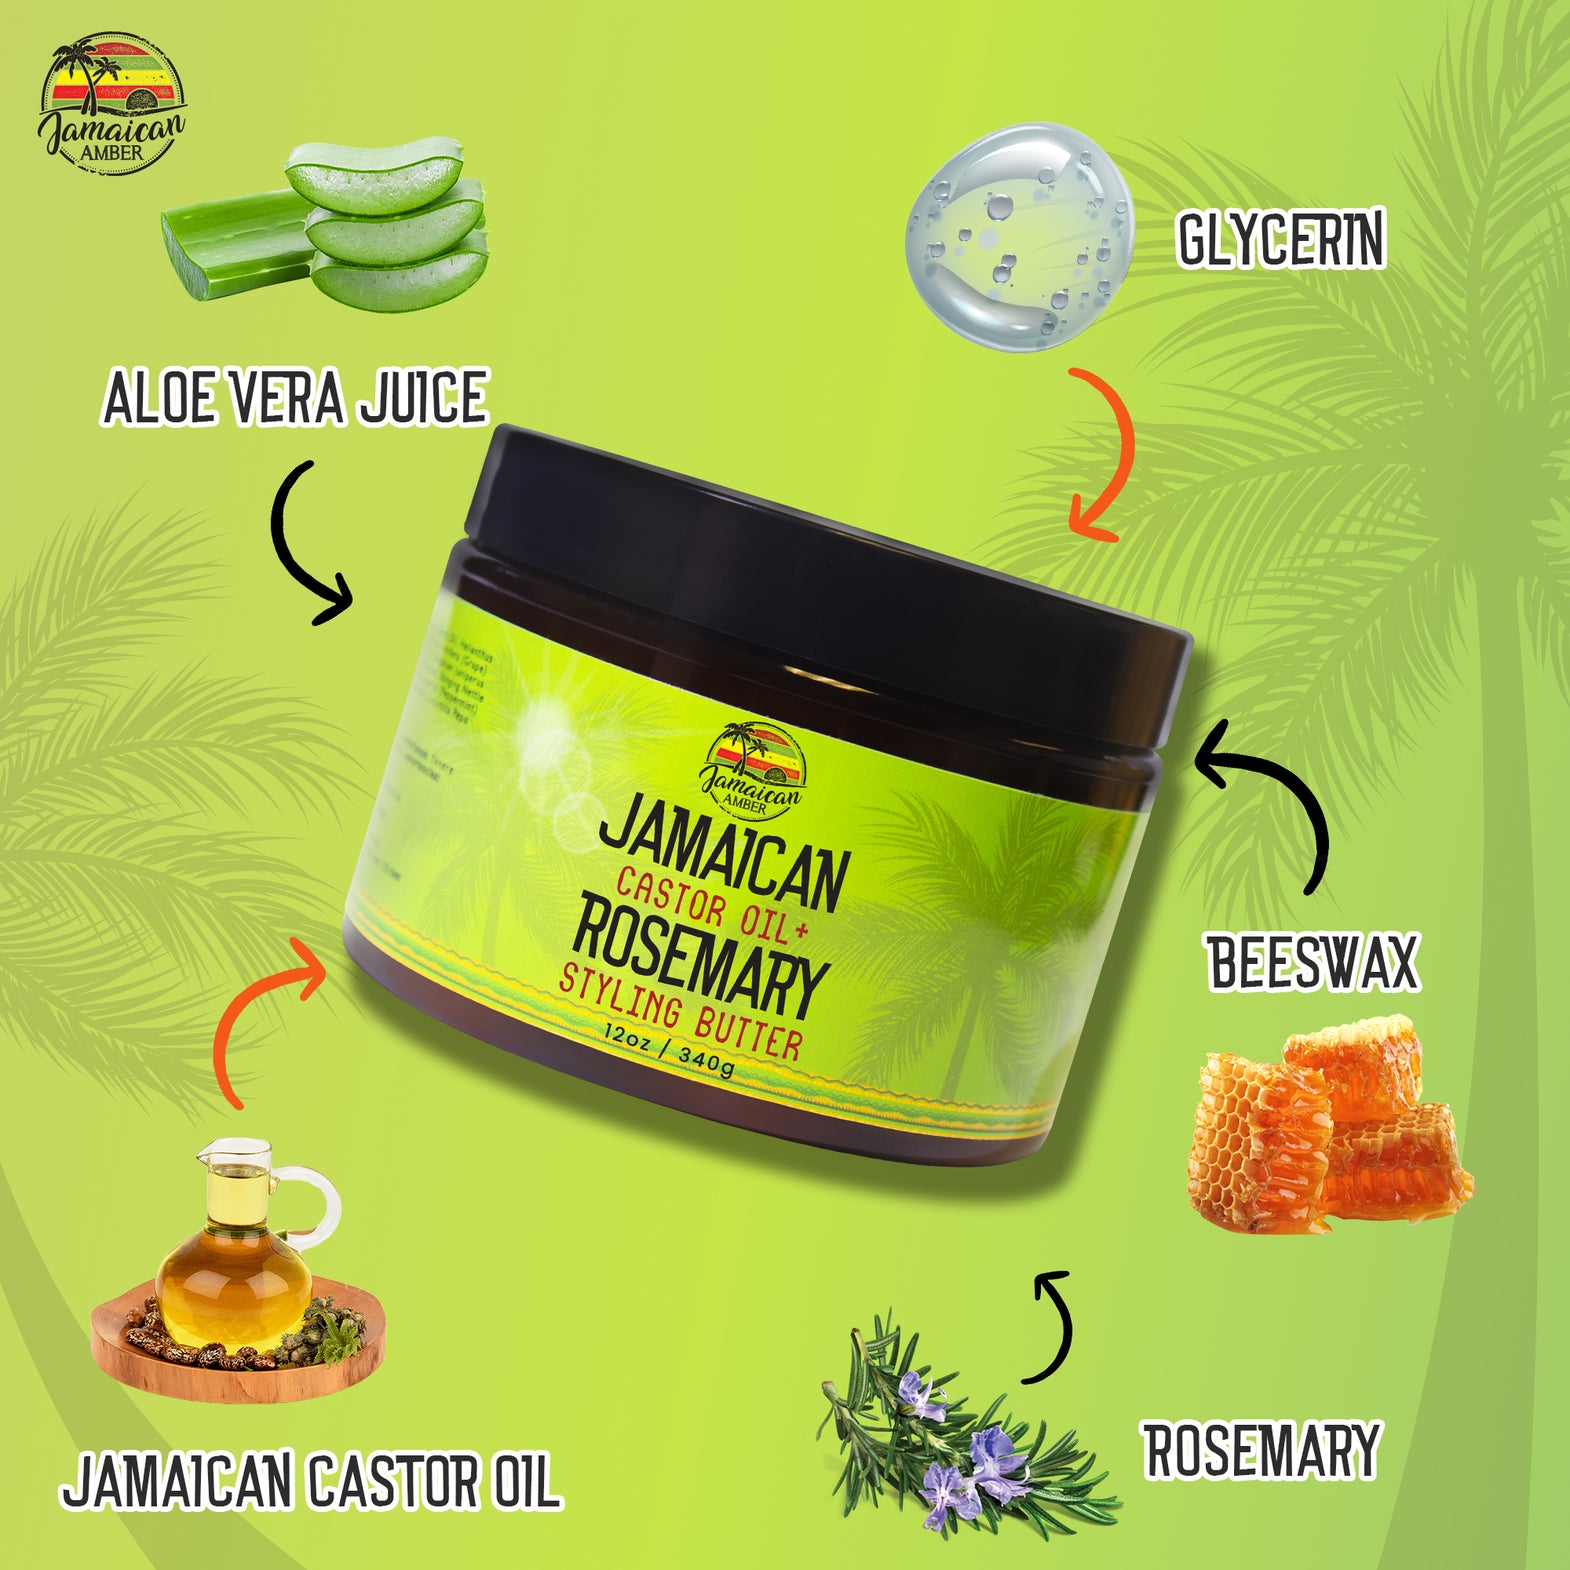 Jamaican Amber Styling Hair Butter Cream 340g